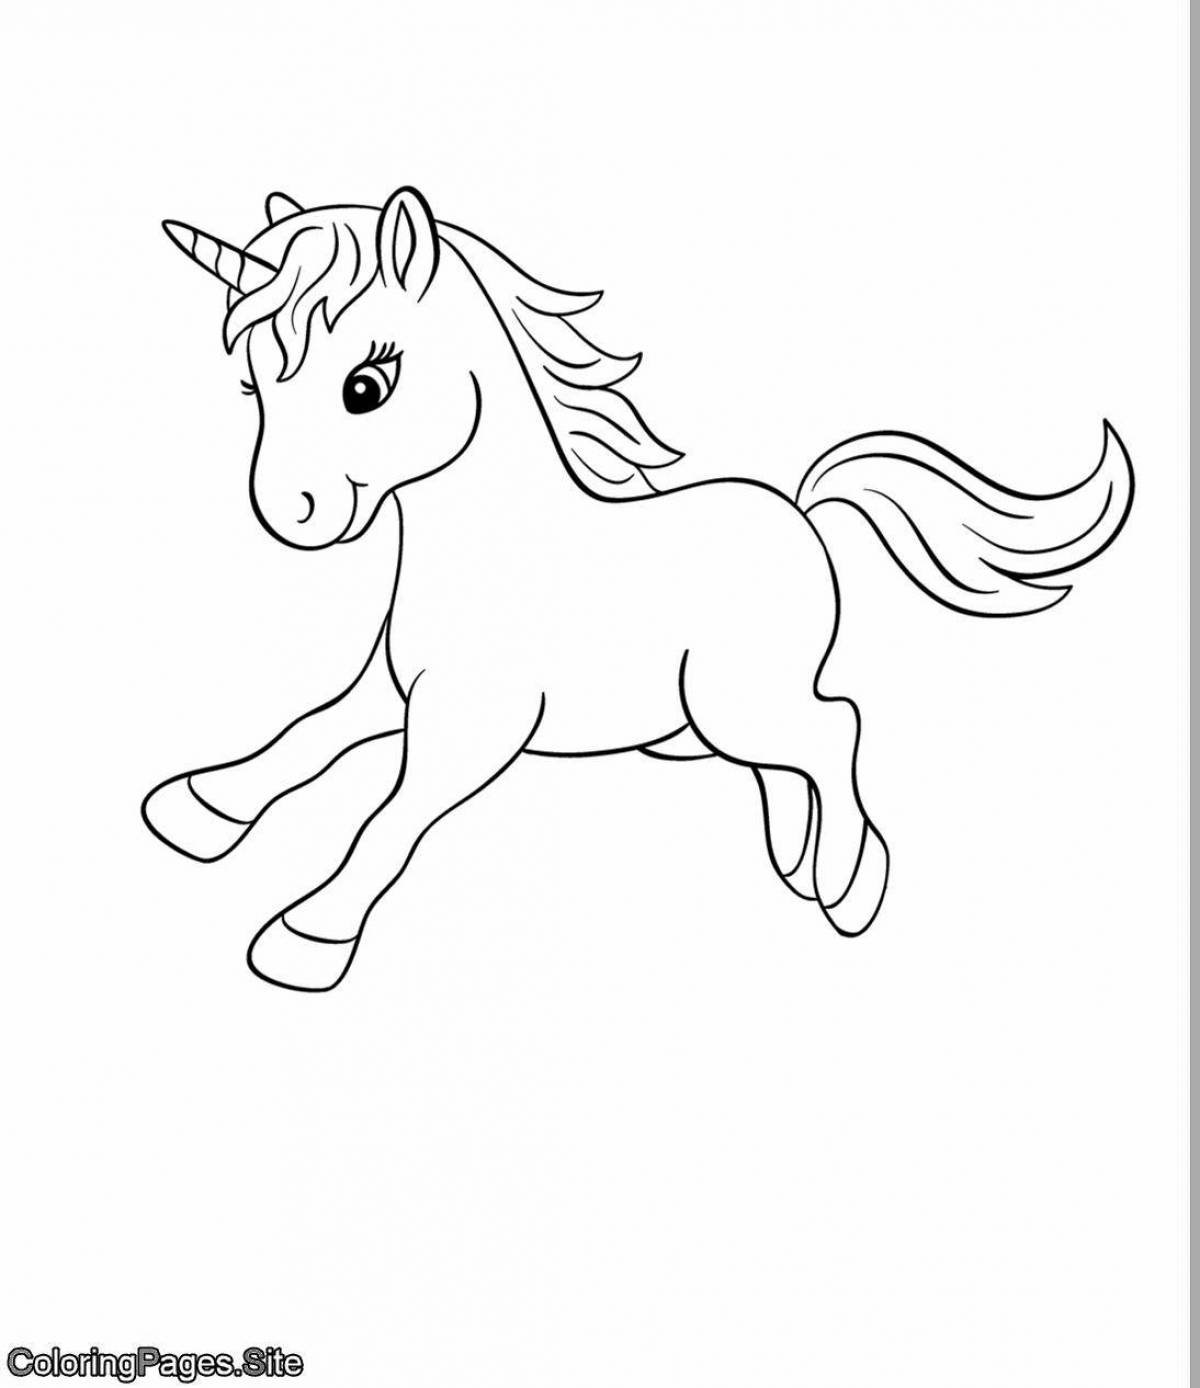 Fun coloring little unicorn